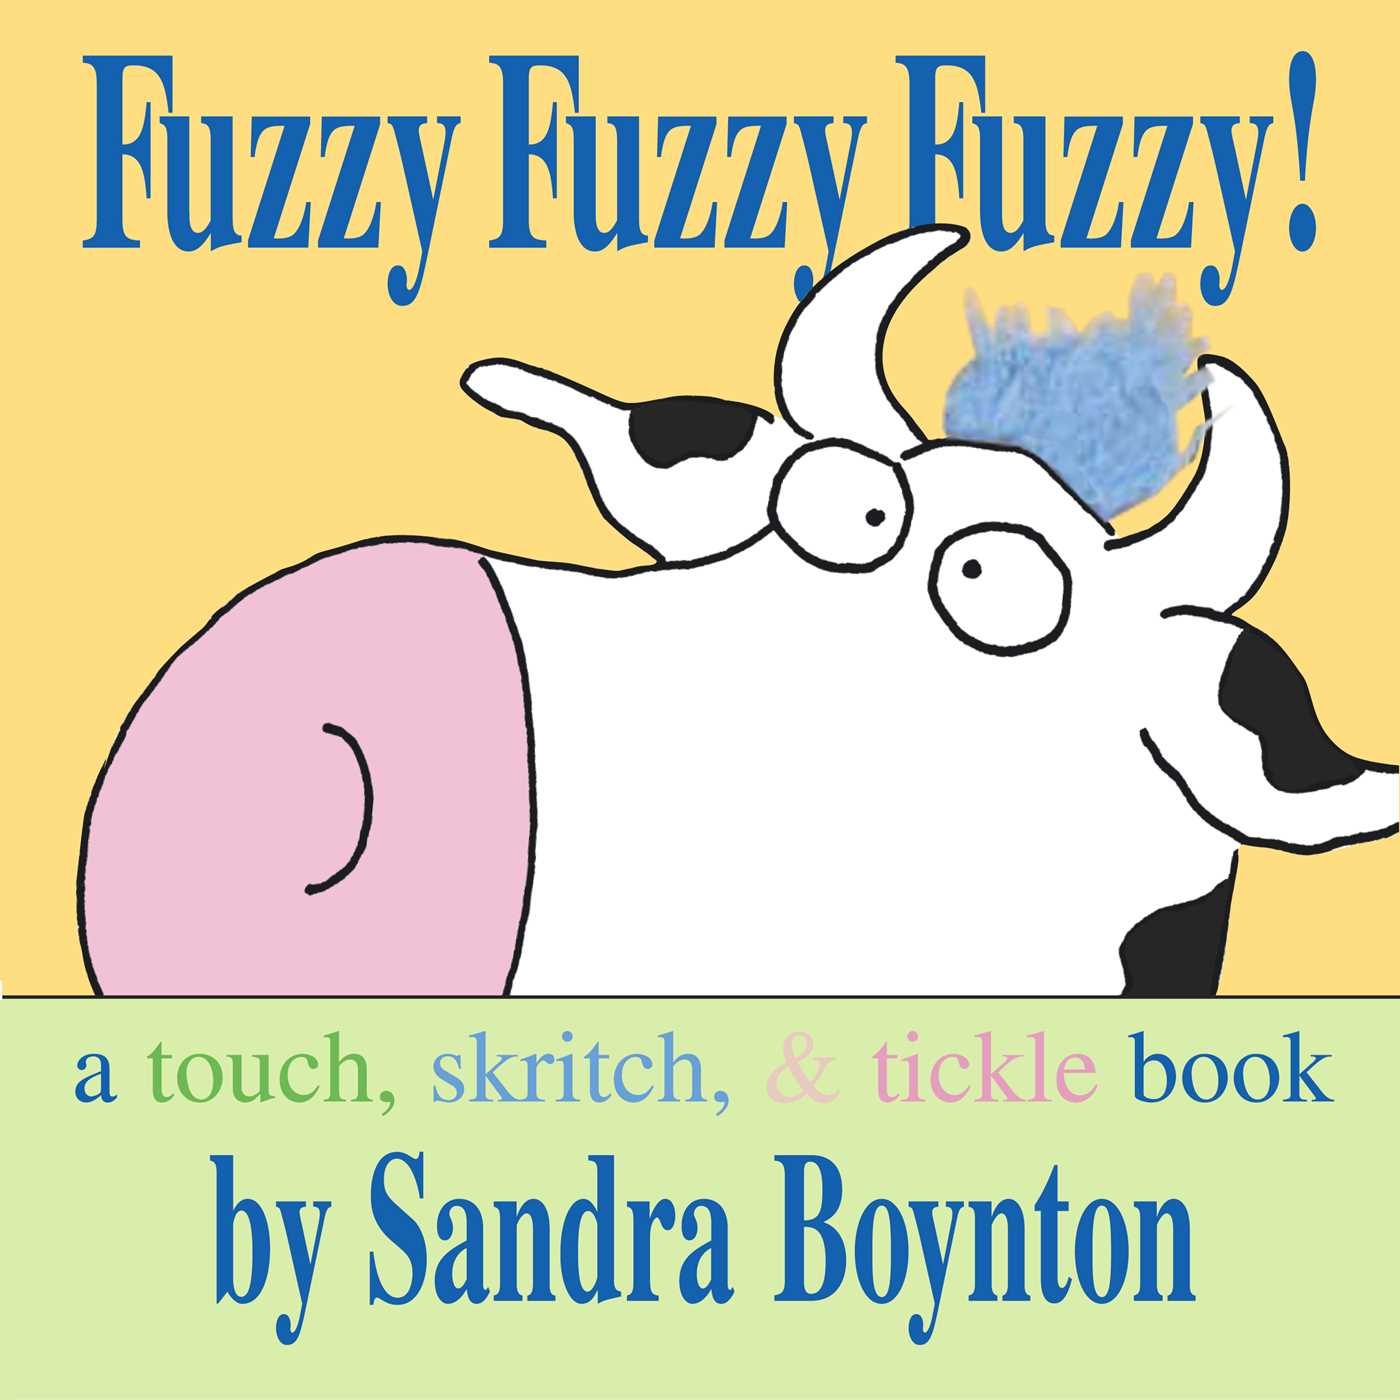 Fuzzy Fuzzy Fuzzy! : Fuzzy Fuzzy Fuzzy!